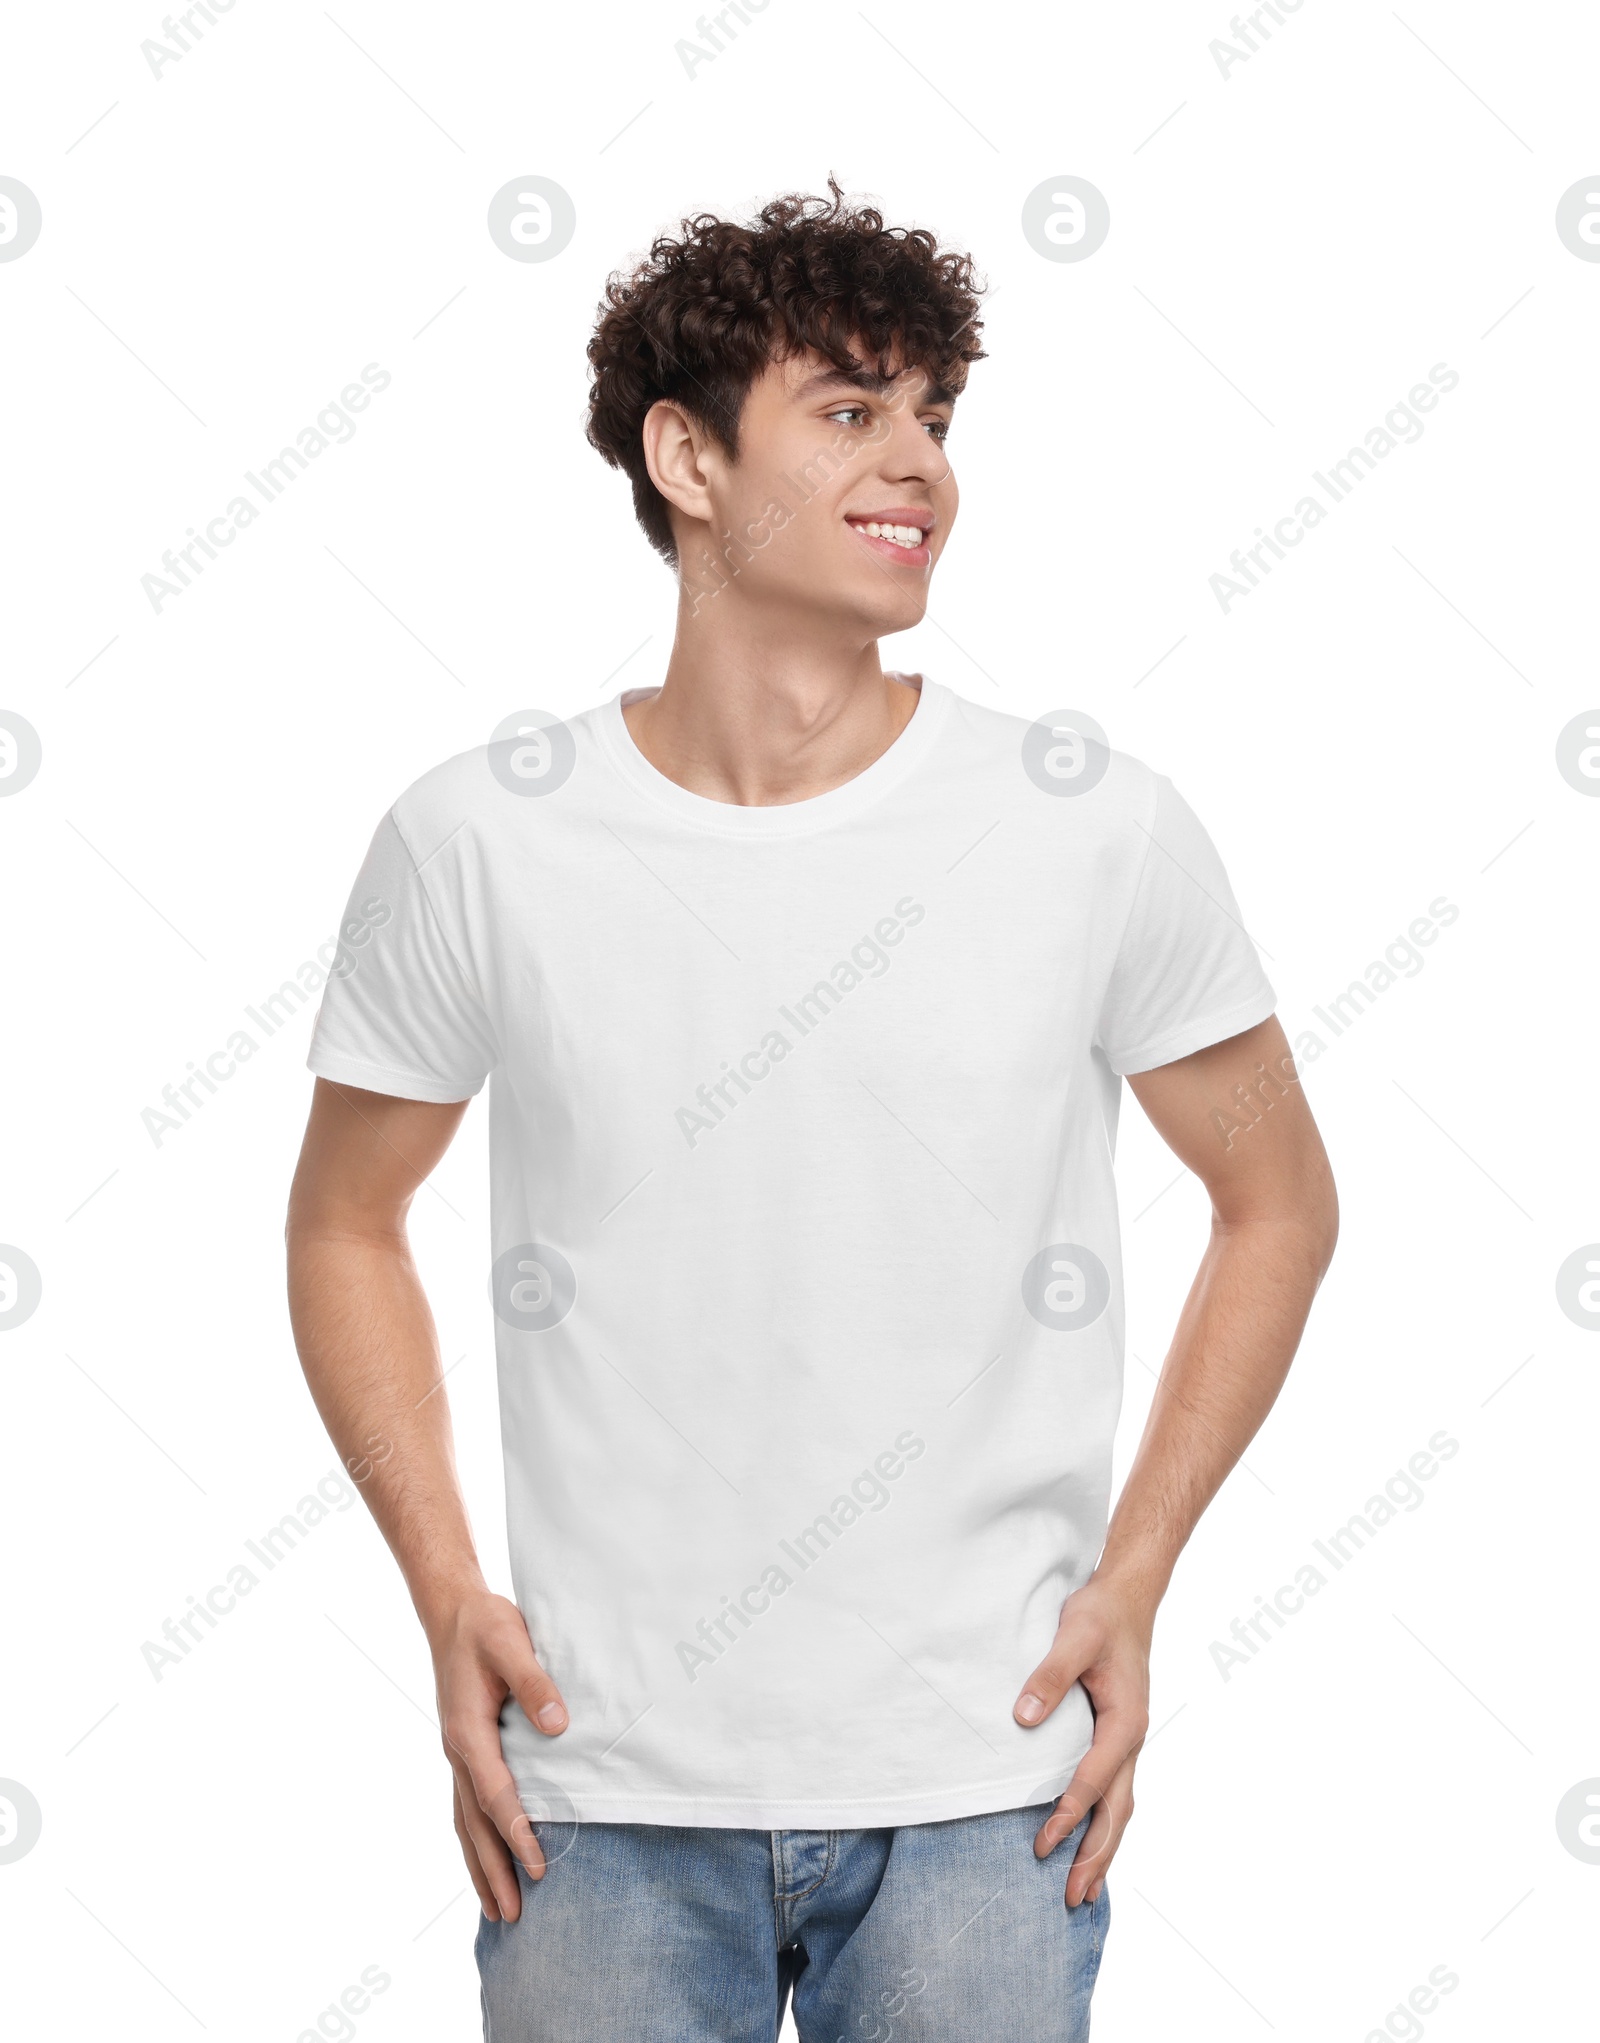 Photo of Man wearing stylish t-shirt on white background. Mockup for design